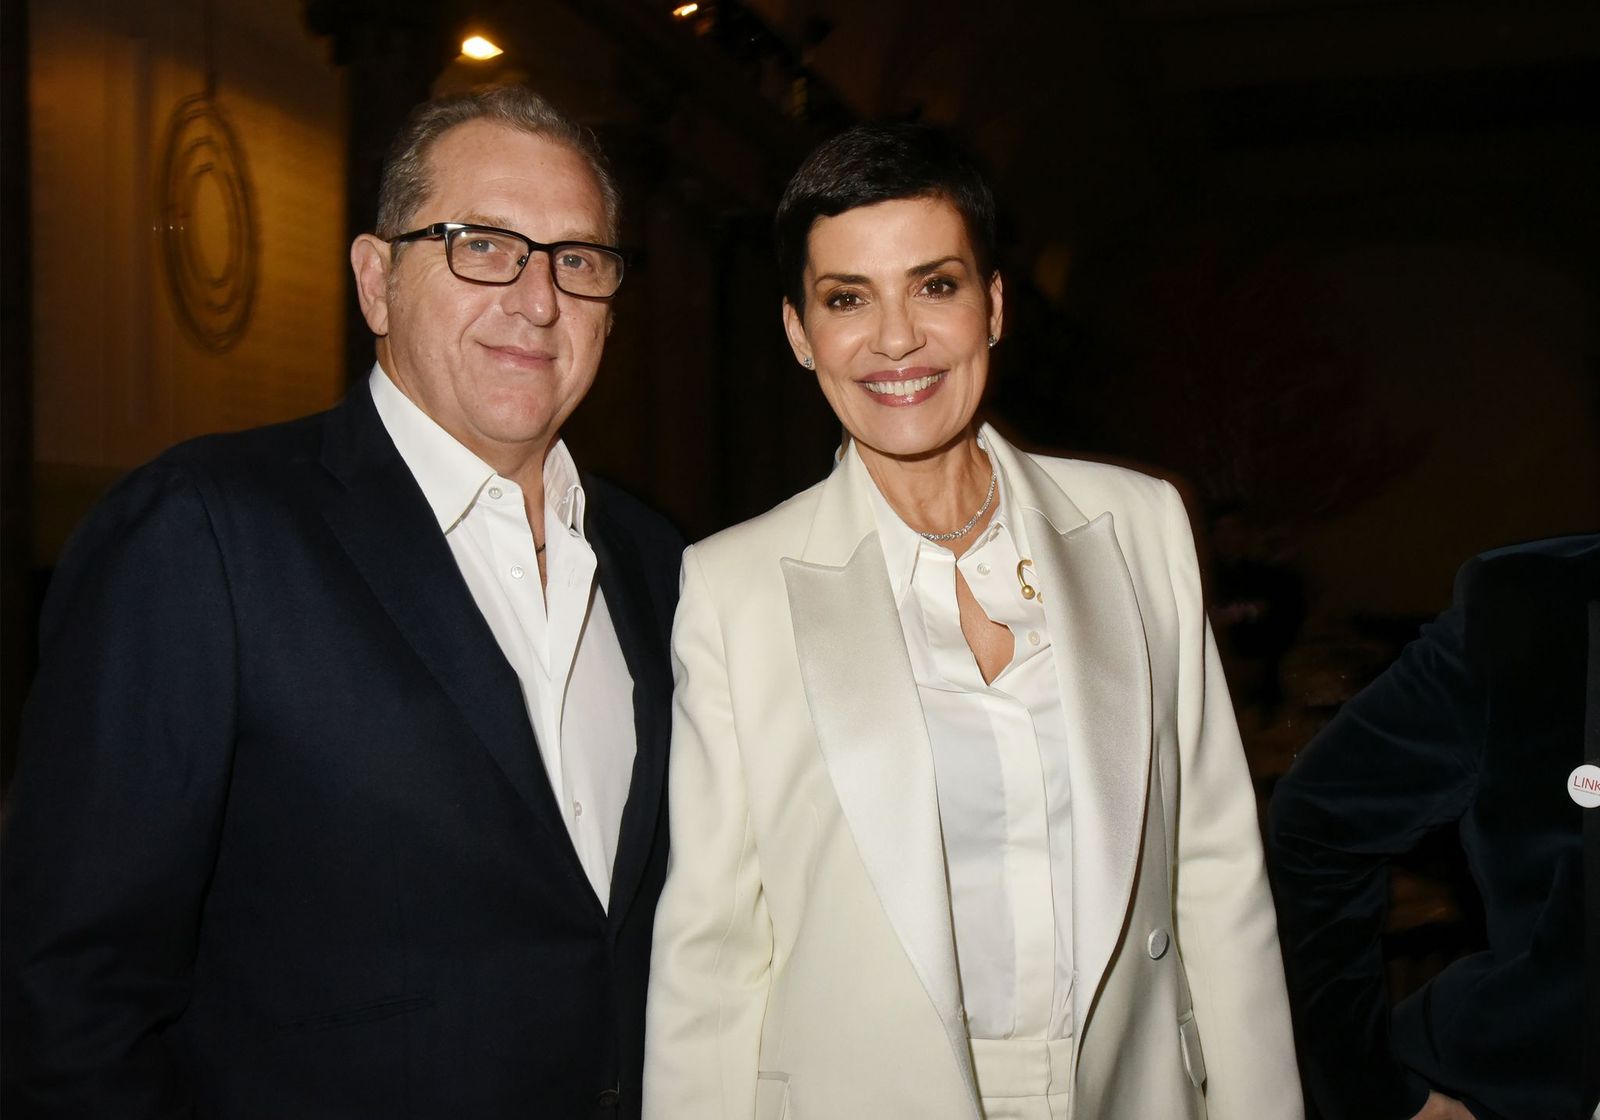 La présentatrice de télévision Cristina Cordula et son compagnon Frédéric Cassin | Photo : Getty Images